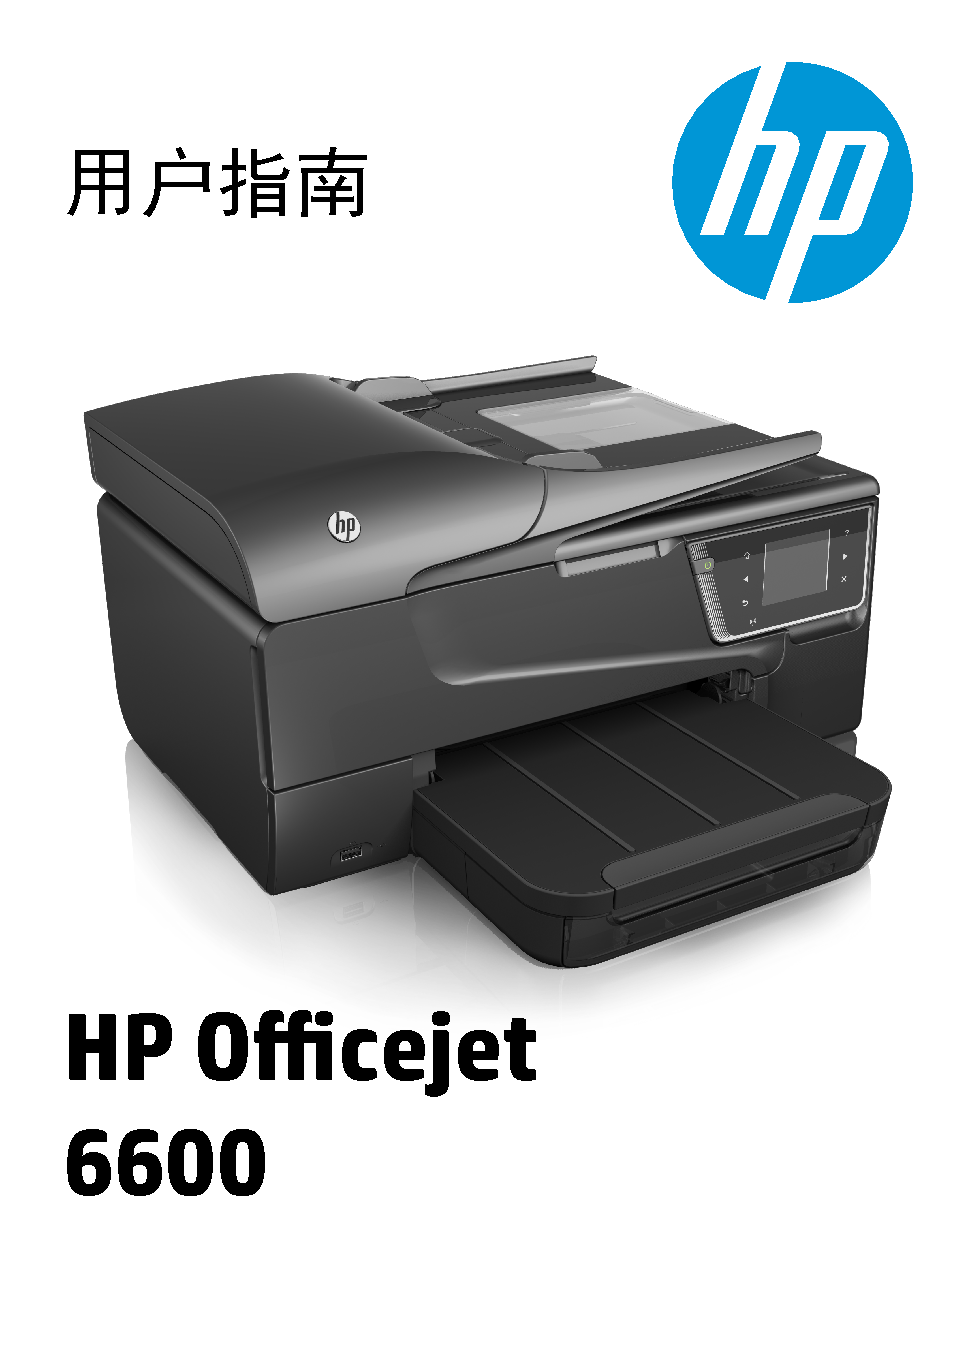 惠普 HP OfficeJet 6600 用户指南 封面